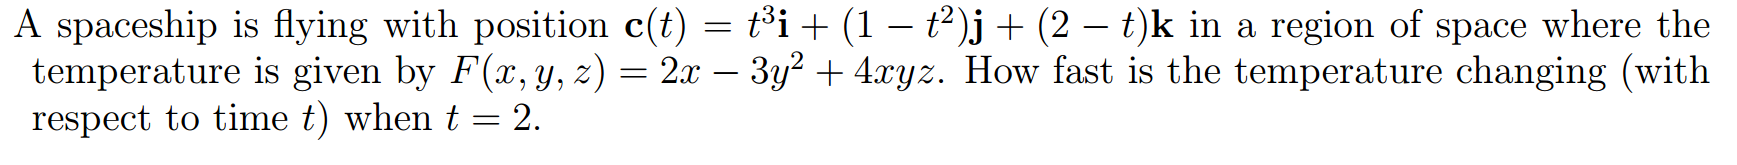 Sqrt(cos(x))cos(200 x)+sqrt(ABS(X))-.07)(4-X*X)^0.01, sqrt(9-x^2),-sqrt(9-x^2) from -4.5 to 4.5. \Sqrt((4-\sqrt(7)))+4\sqrt(2). Sqrt2+sqrt2. (Sqrt(cos(x))*cos(75x)+sqrt(ABS(X))-.7)*(4-X*X)1.2,sqrt(9-x^2)-sqrt(9-x^2) from-4.5-x. 3 frac x 5 x